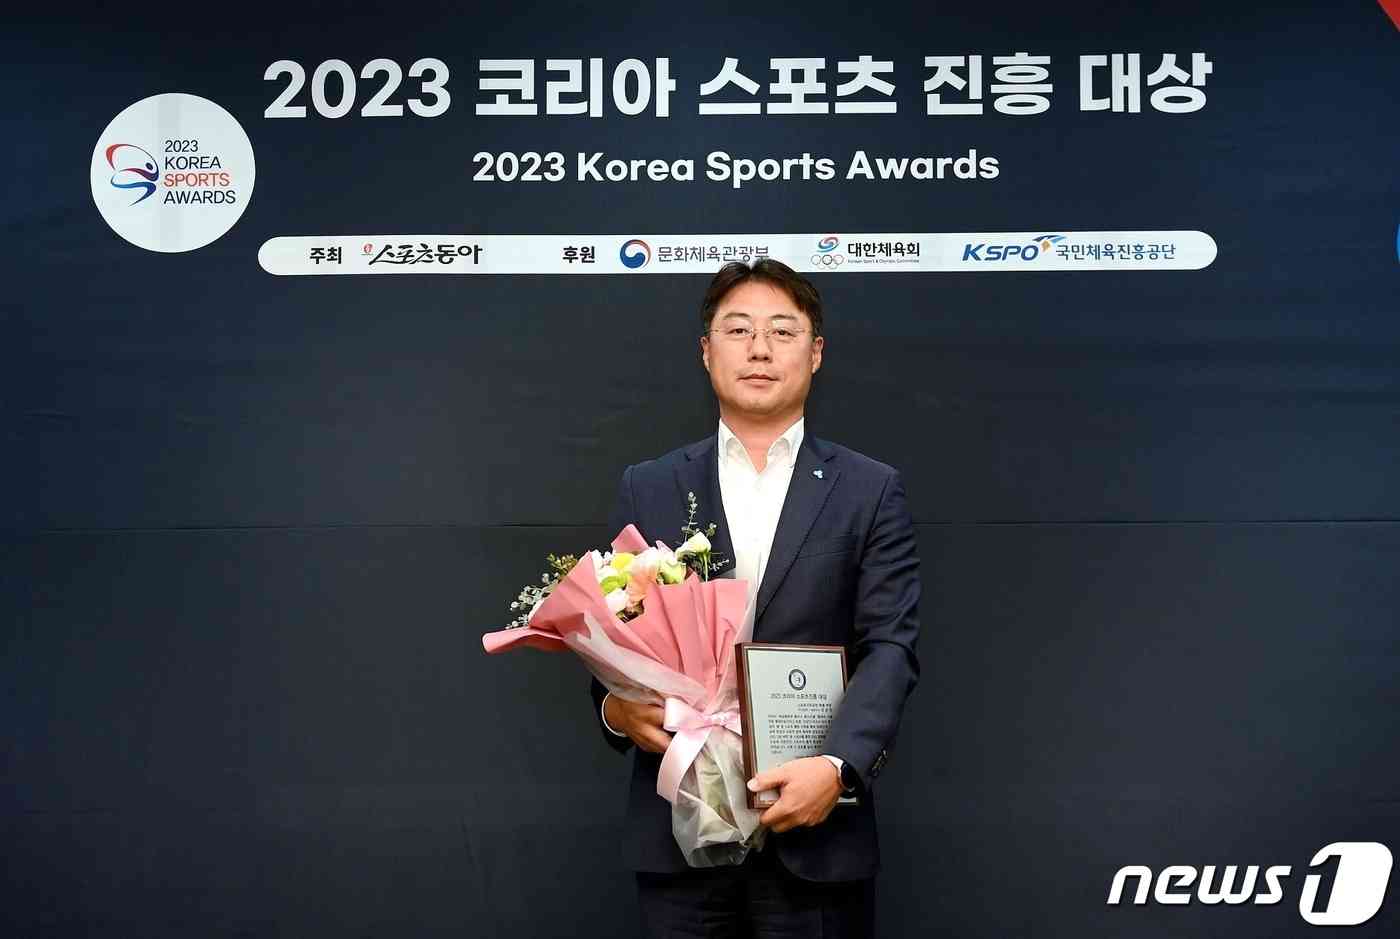 ‘2023 코리아 스포츠진흥대상’ 2년 연속 수상 기념 촬영/사진제공=상상인